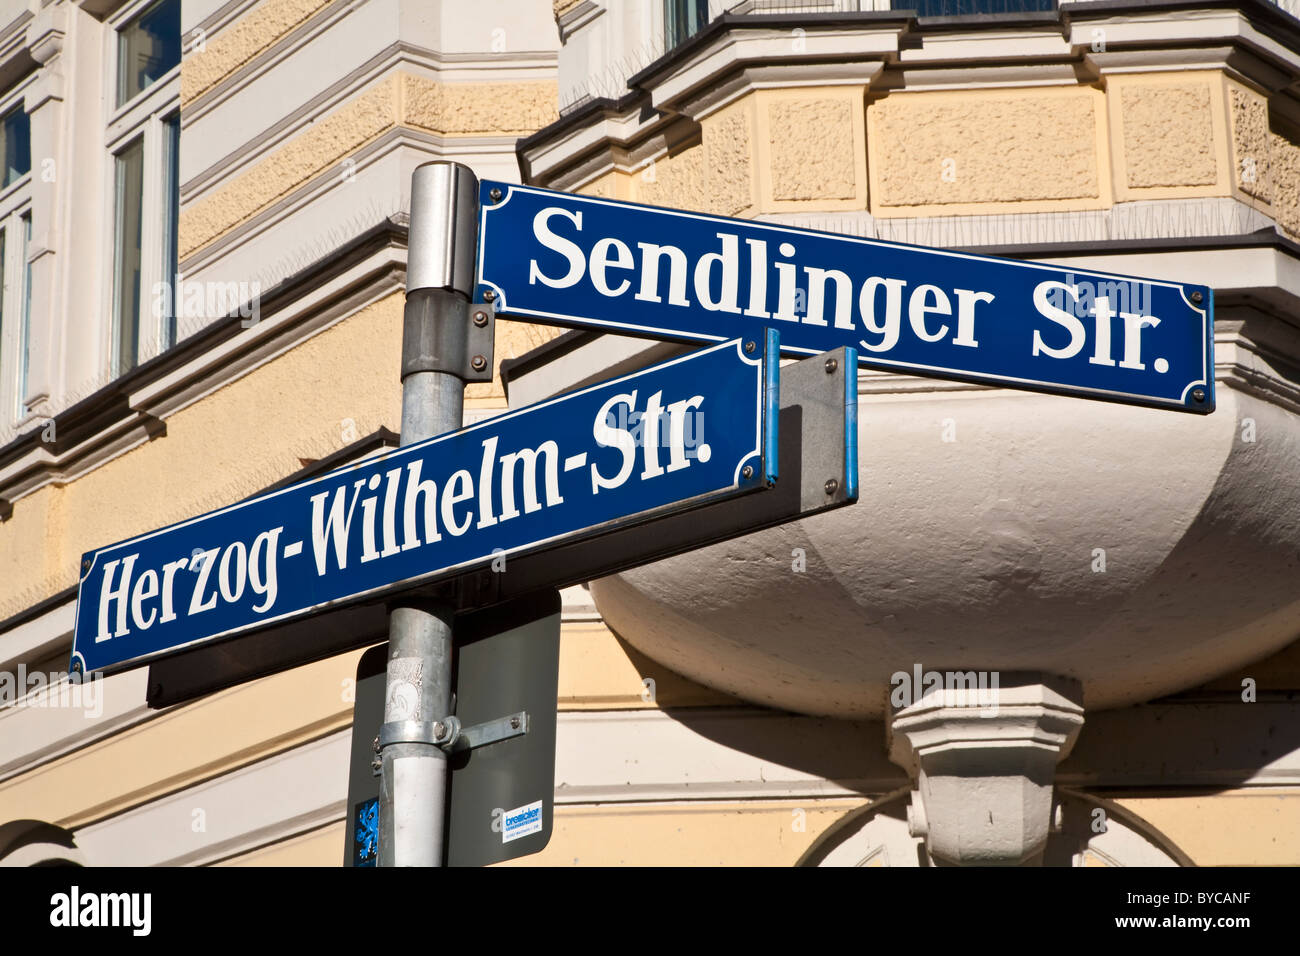 Straßenschilder, München, Deutschland Stockfotografie - Alamy